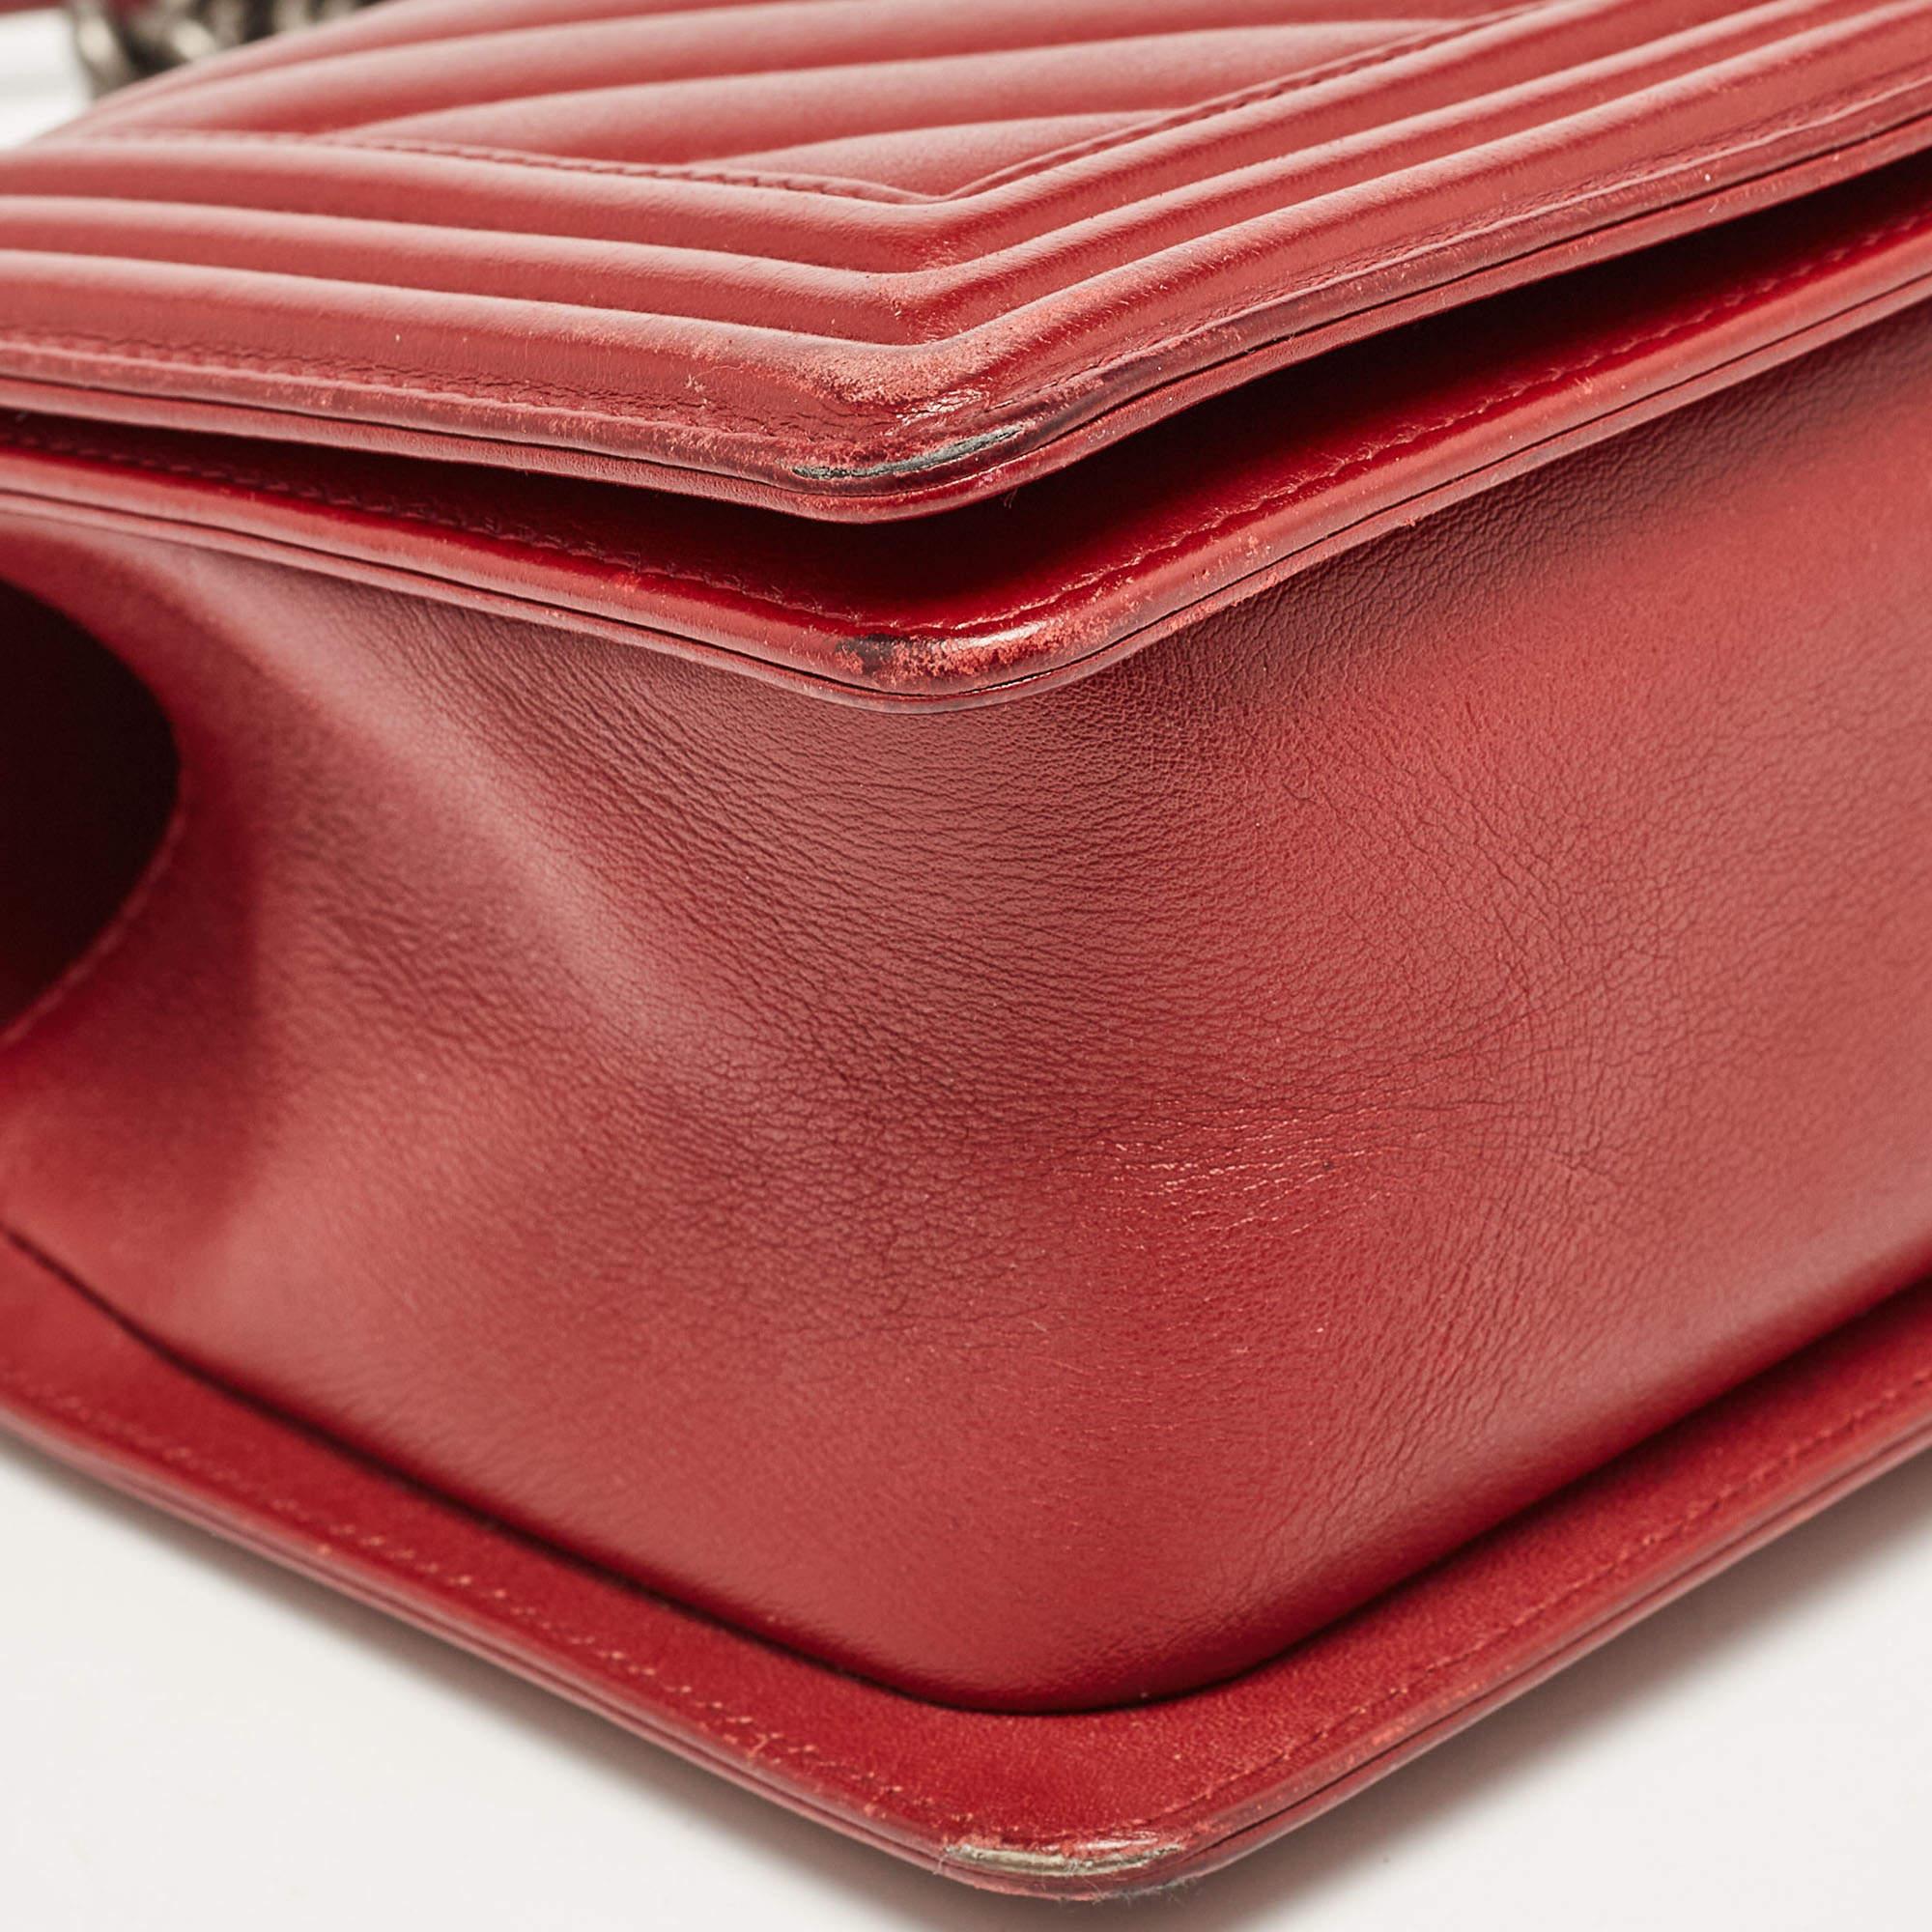 Chanel Red Chevron Leather Medium Boy Bag 4